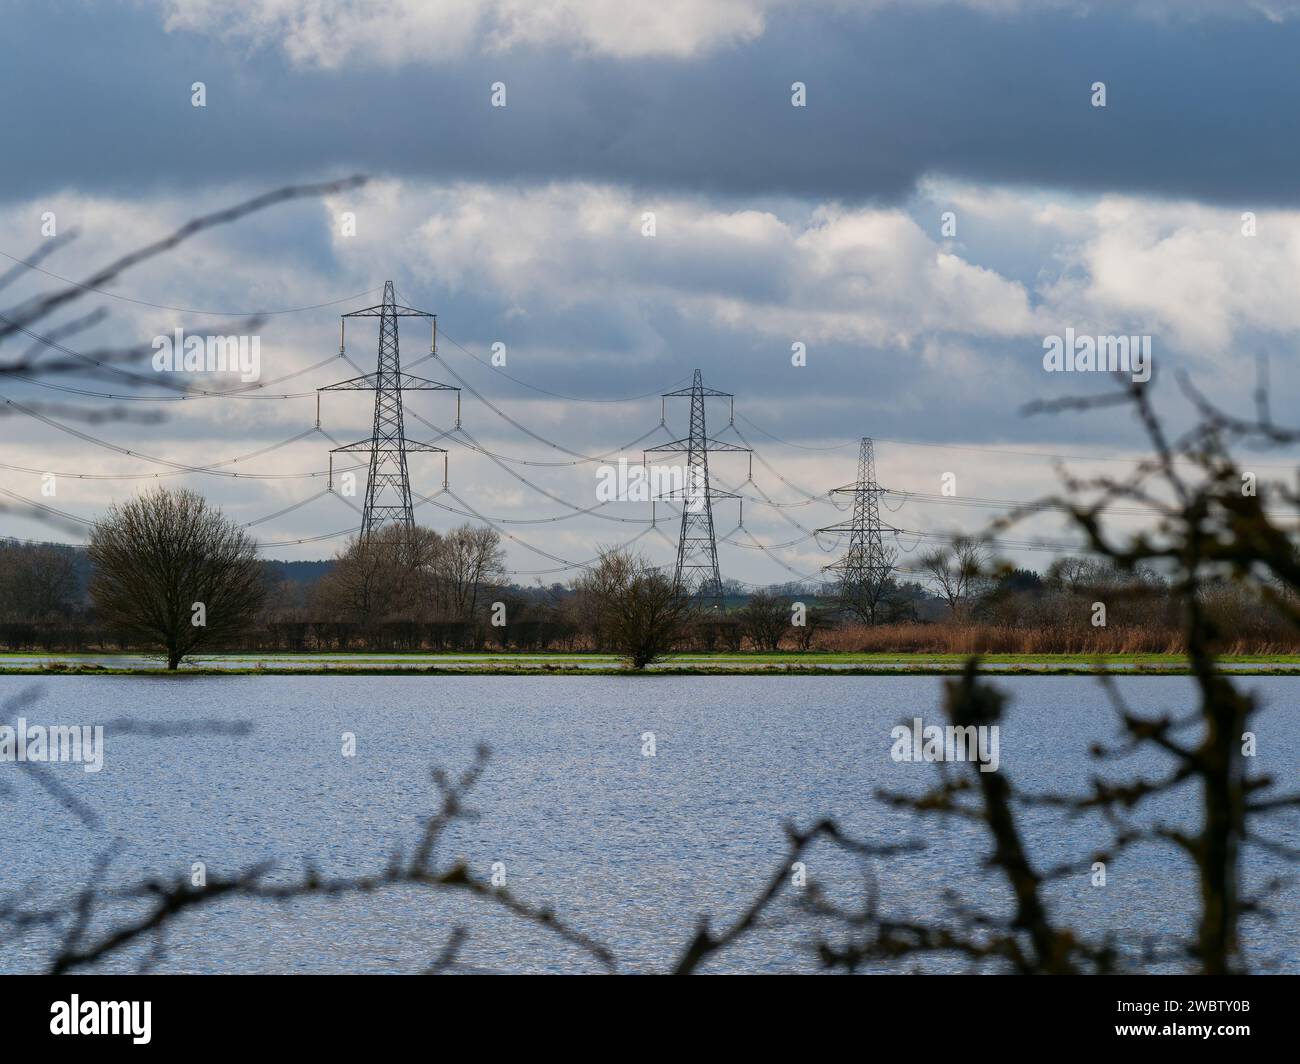 Les pylônes électriques et le champ inondé résultat de fortes pluies dans tout l'Oxfordshire, prises dans Thrupp Turn, Faringdon - concept : changement climatique Banque D'Images